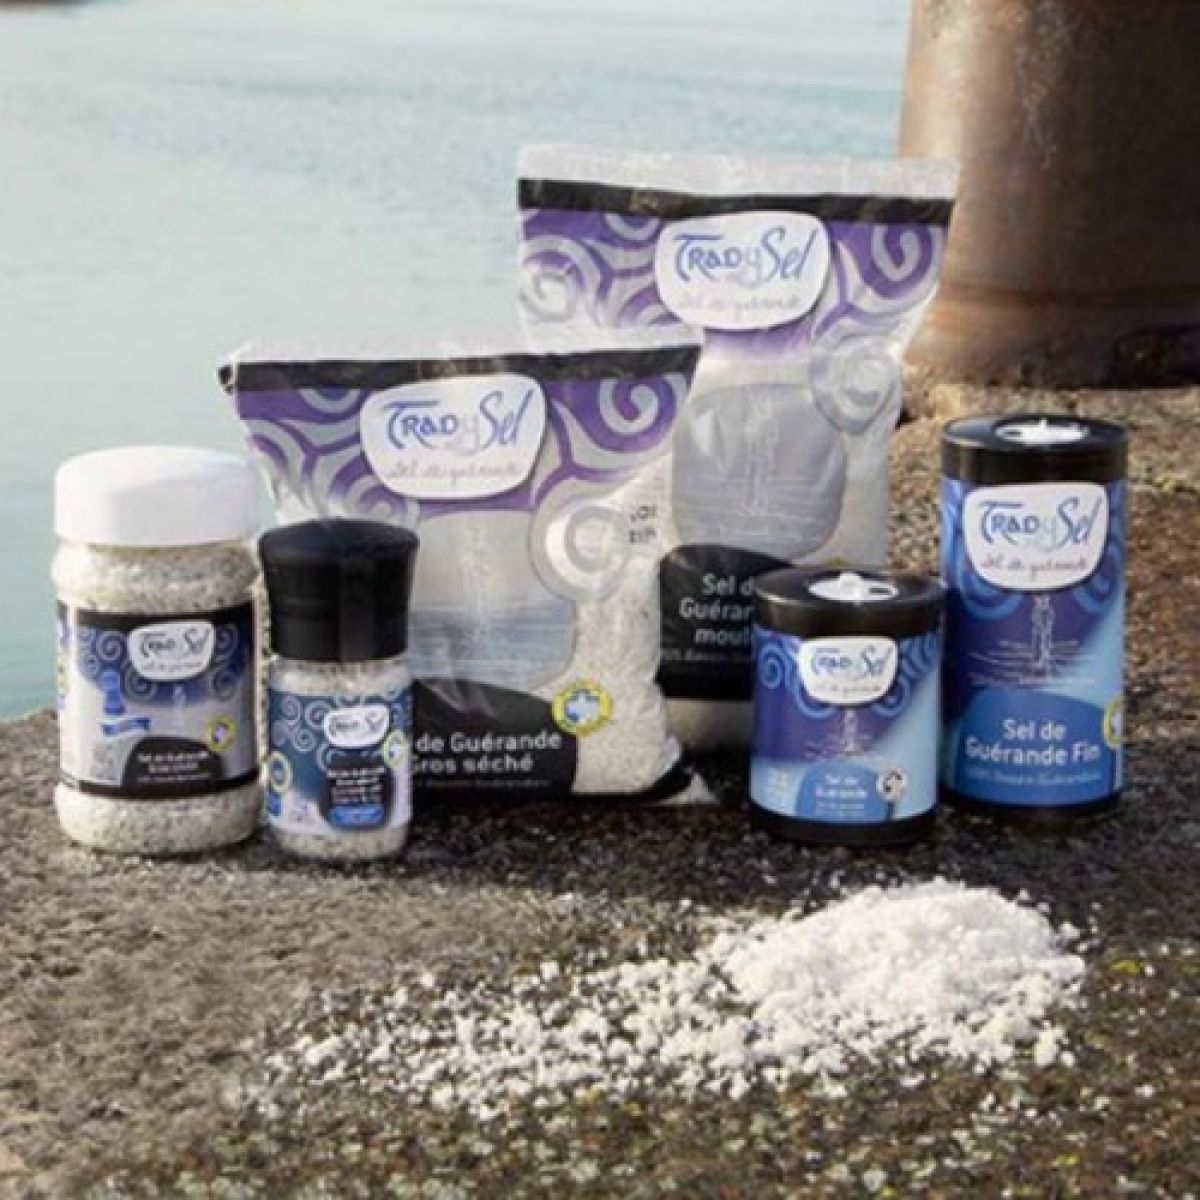 Celtic Sea Salt Trad y Sel Refillable Grinder 70g